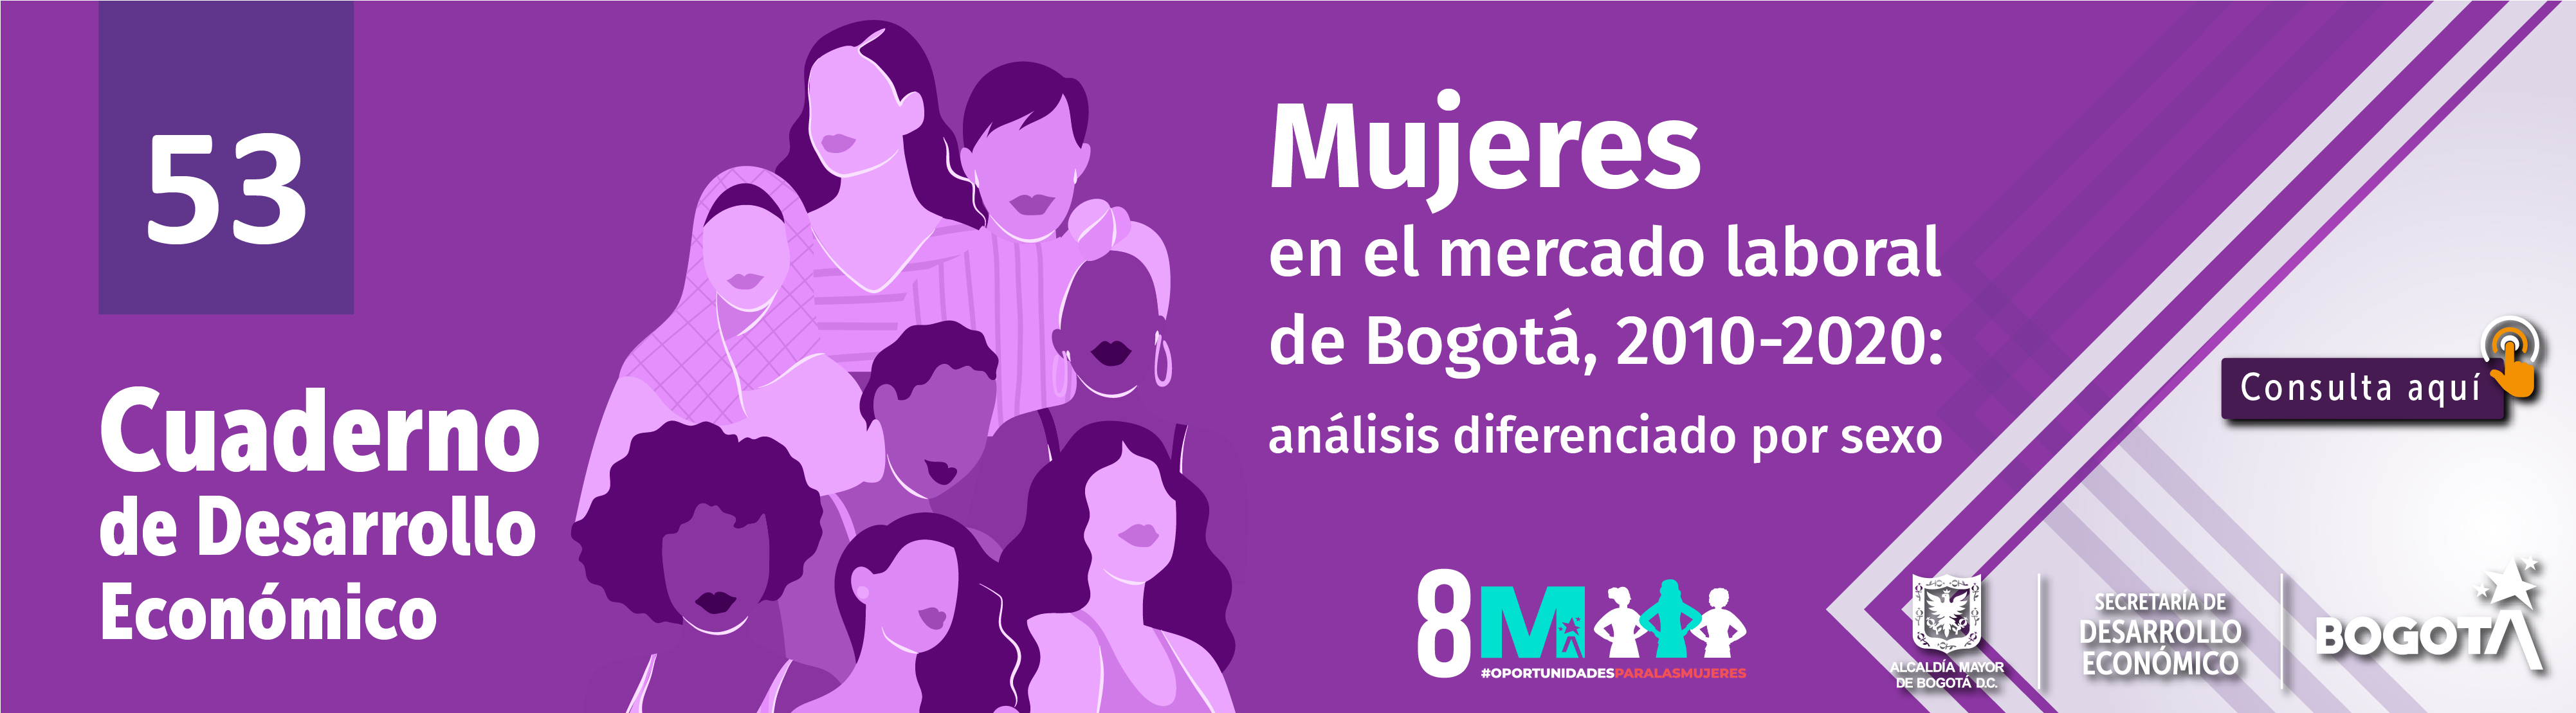 Mujeres en el mercado laboral de Bogotá, 2010-2020